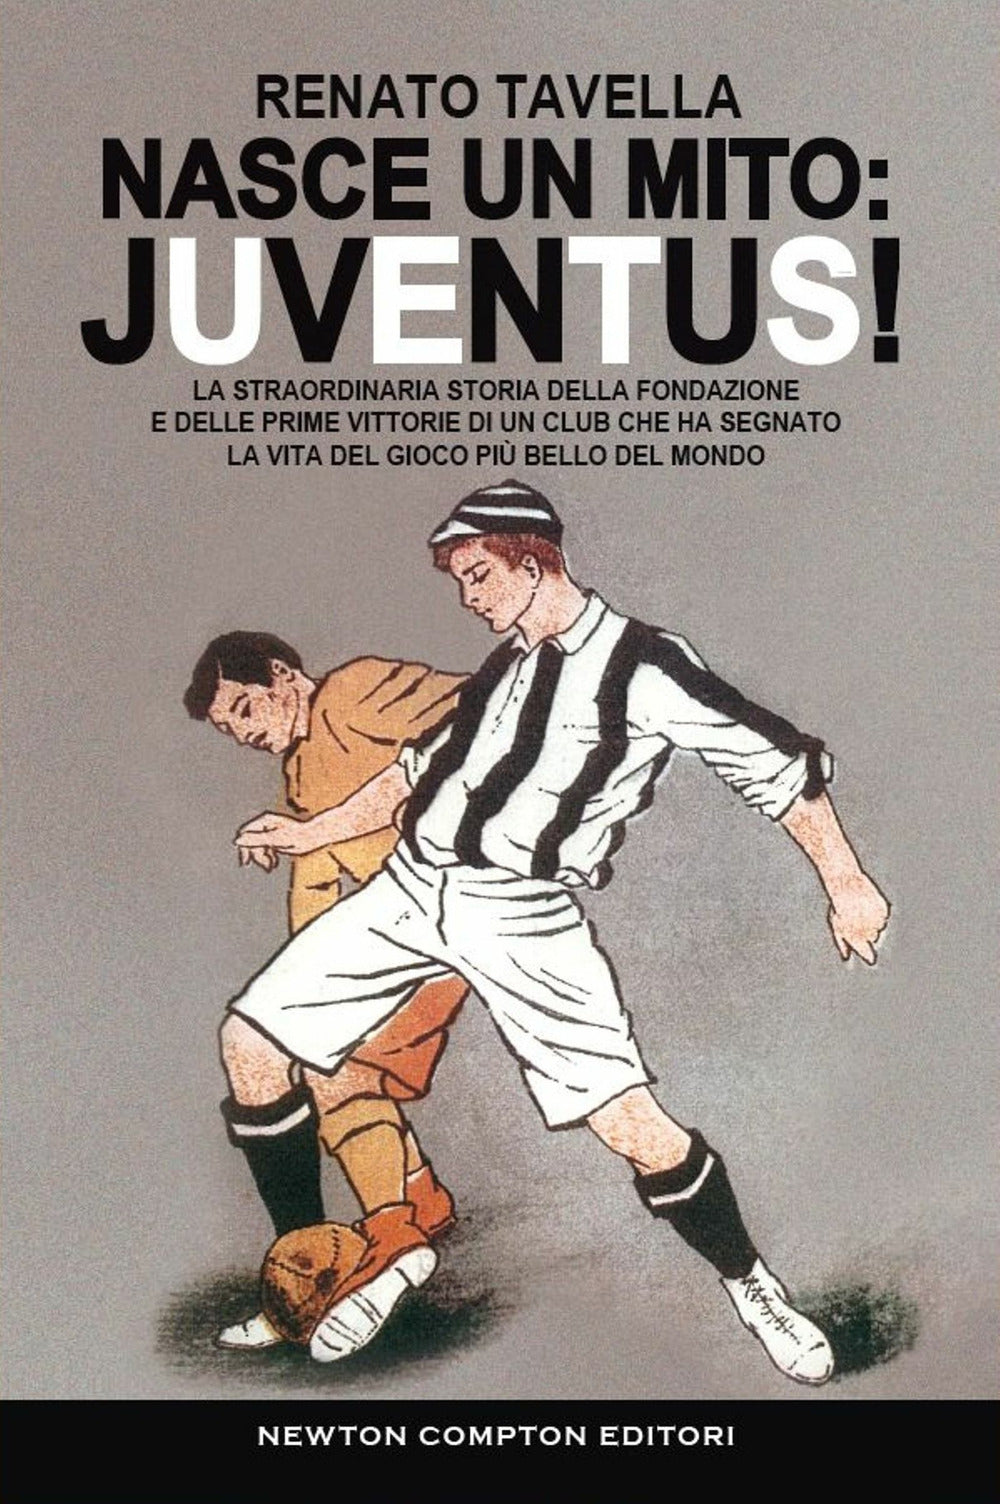 Nasce un mito: Juventus! La straordinaria storia della fondazione e delle prime vittorie di un club che ha segnato la vita del gioco più bello del mondo.